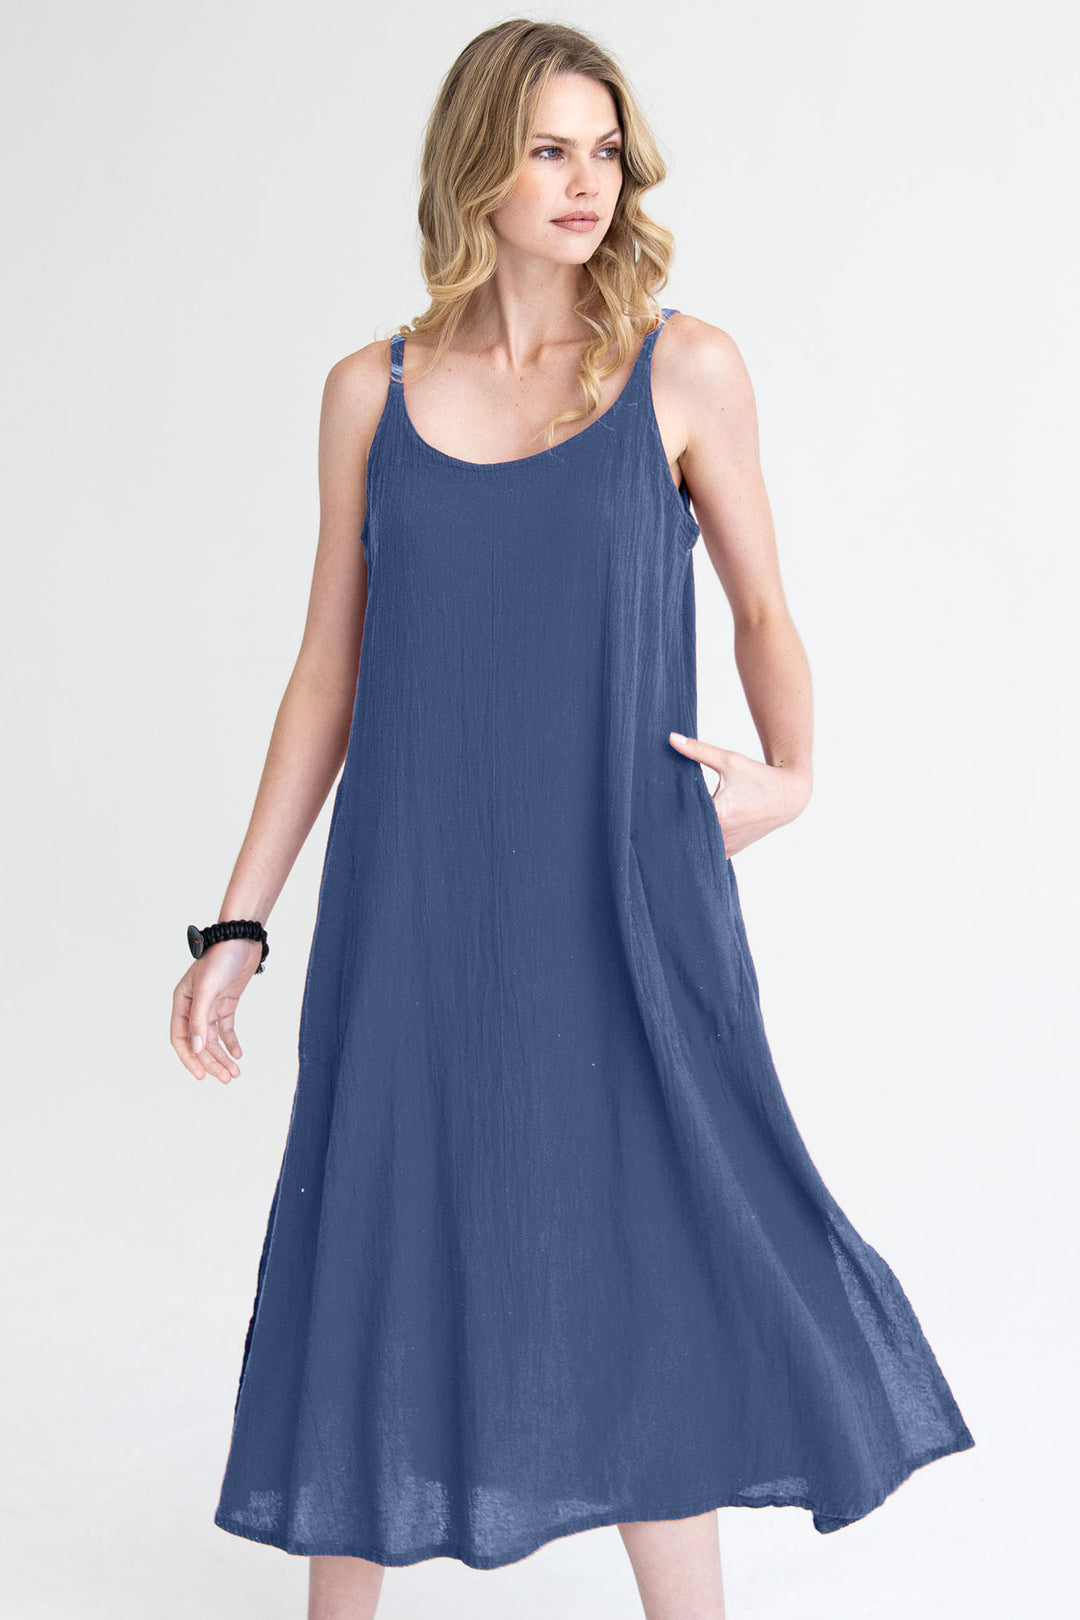 Onelife D660 Figi Neptune Blue Cotton Dress - Experience Boutique